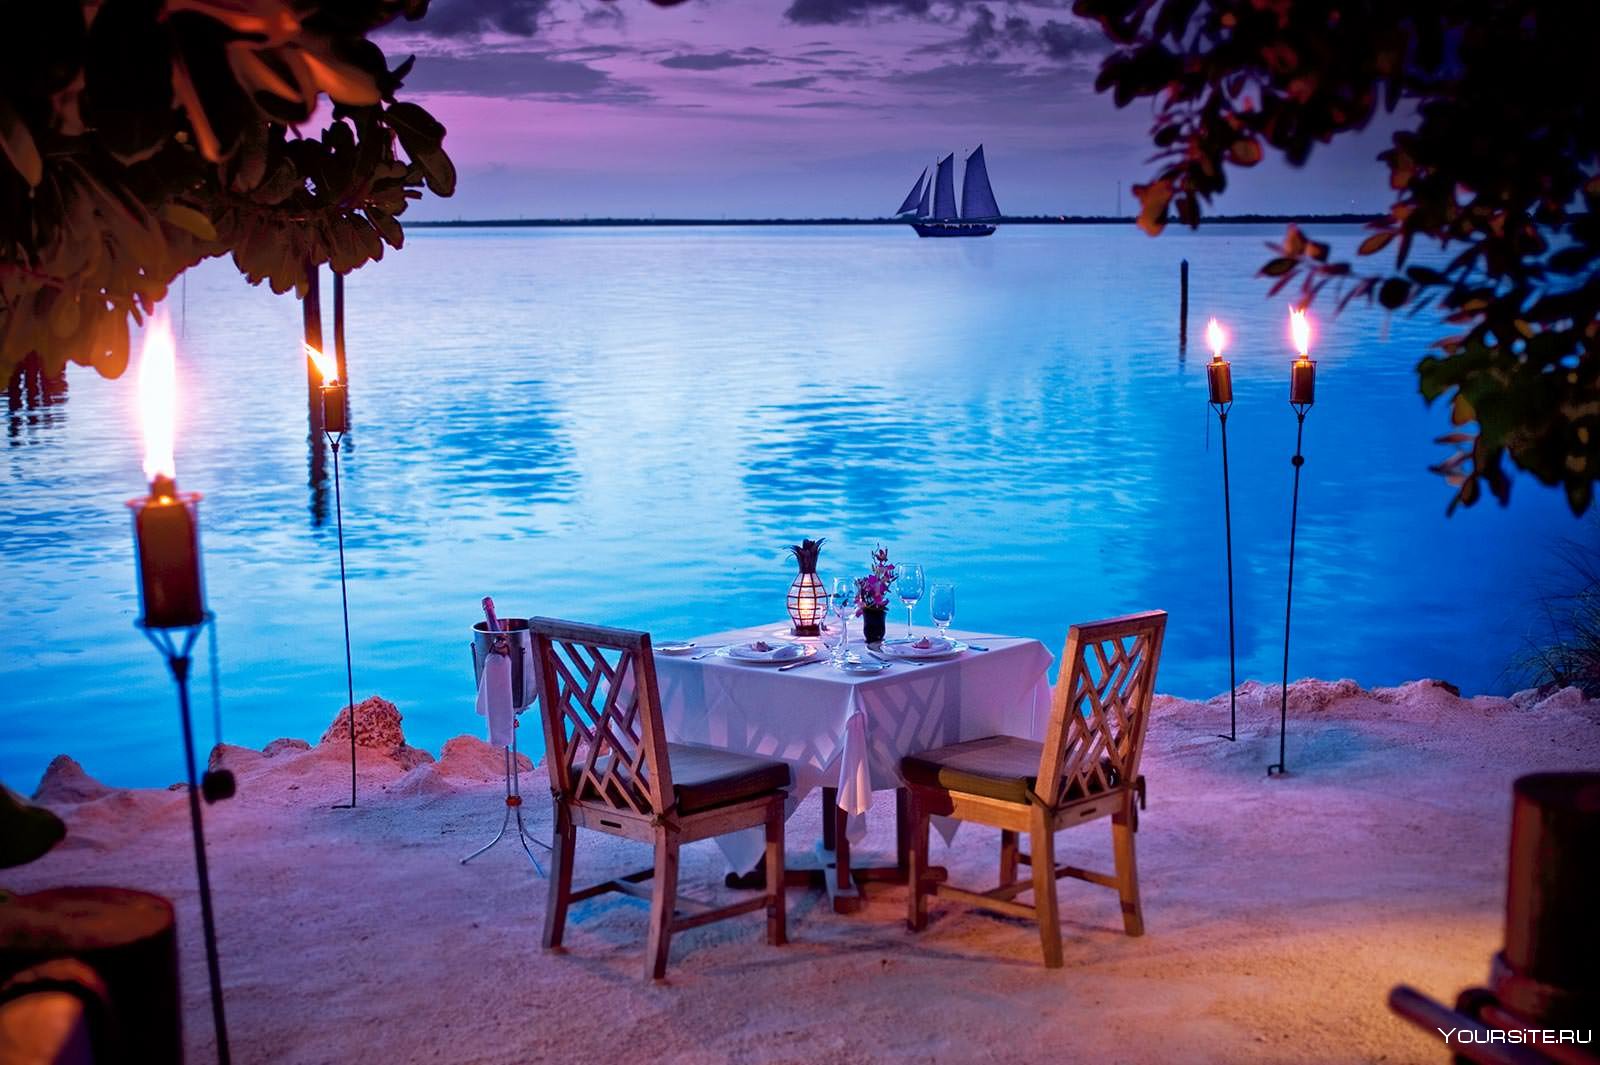 Вечер время отдыхать. Романтические места. Ужин на берегу моря. Столик с видом на море. Романтичный вечер.